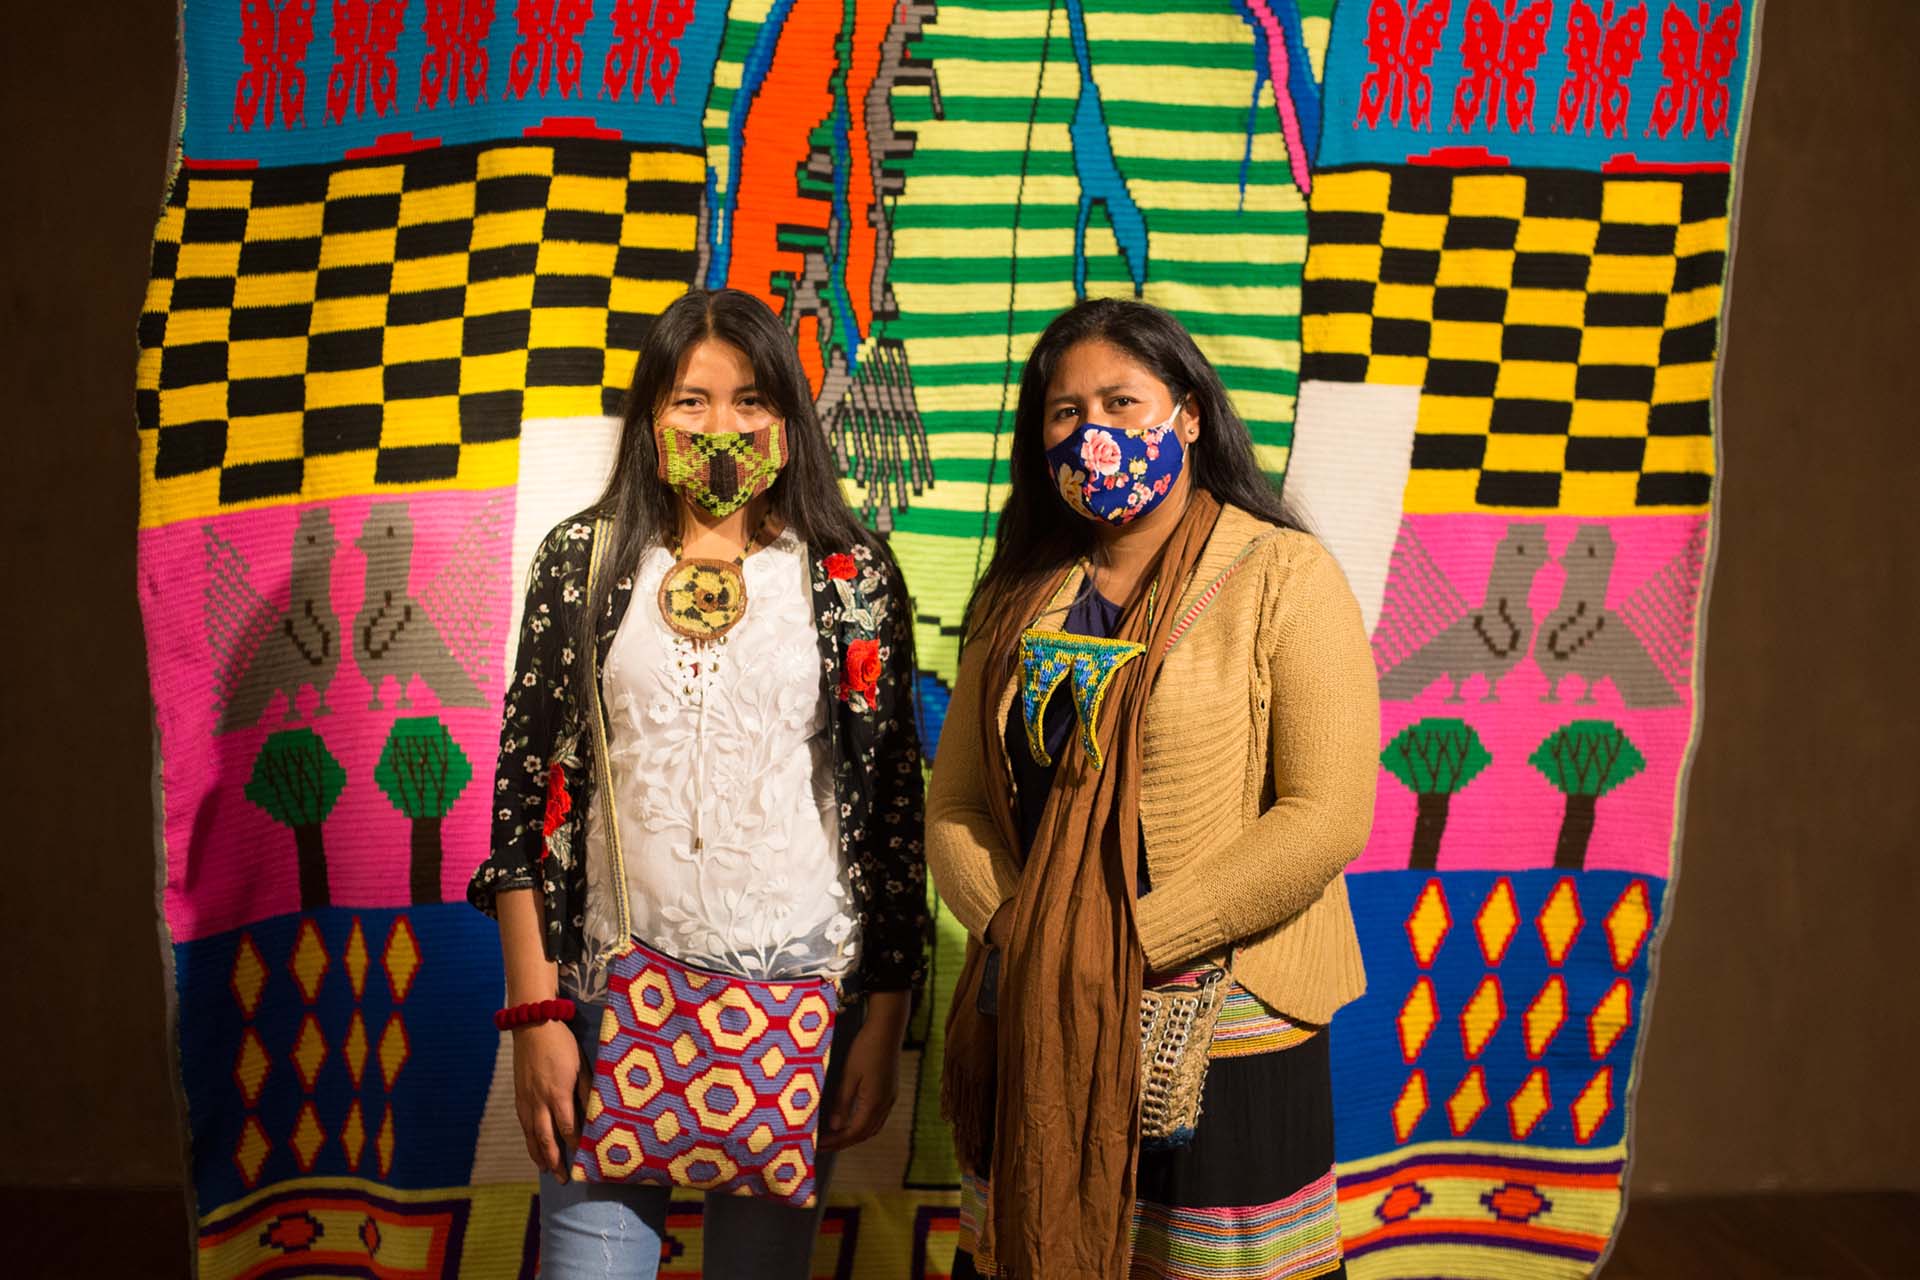 Claudia Alarcón y Anabel Luna, parte del colectivo Thañí / Viene del monte, que participaron de "La escucha y los vientos" en el lanzamiento de Bienalsur 2021 en Salta  (Matías Maiztegui - Cortesía BIENALSUR)
